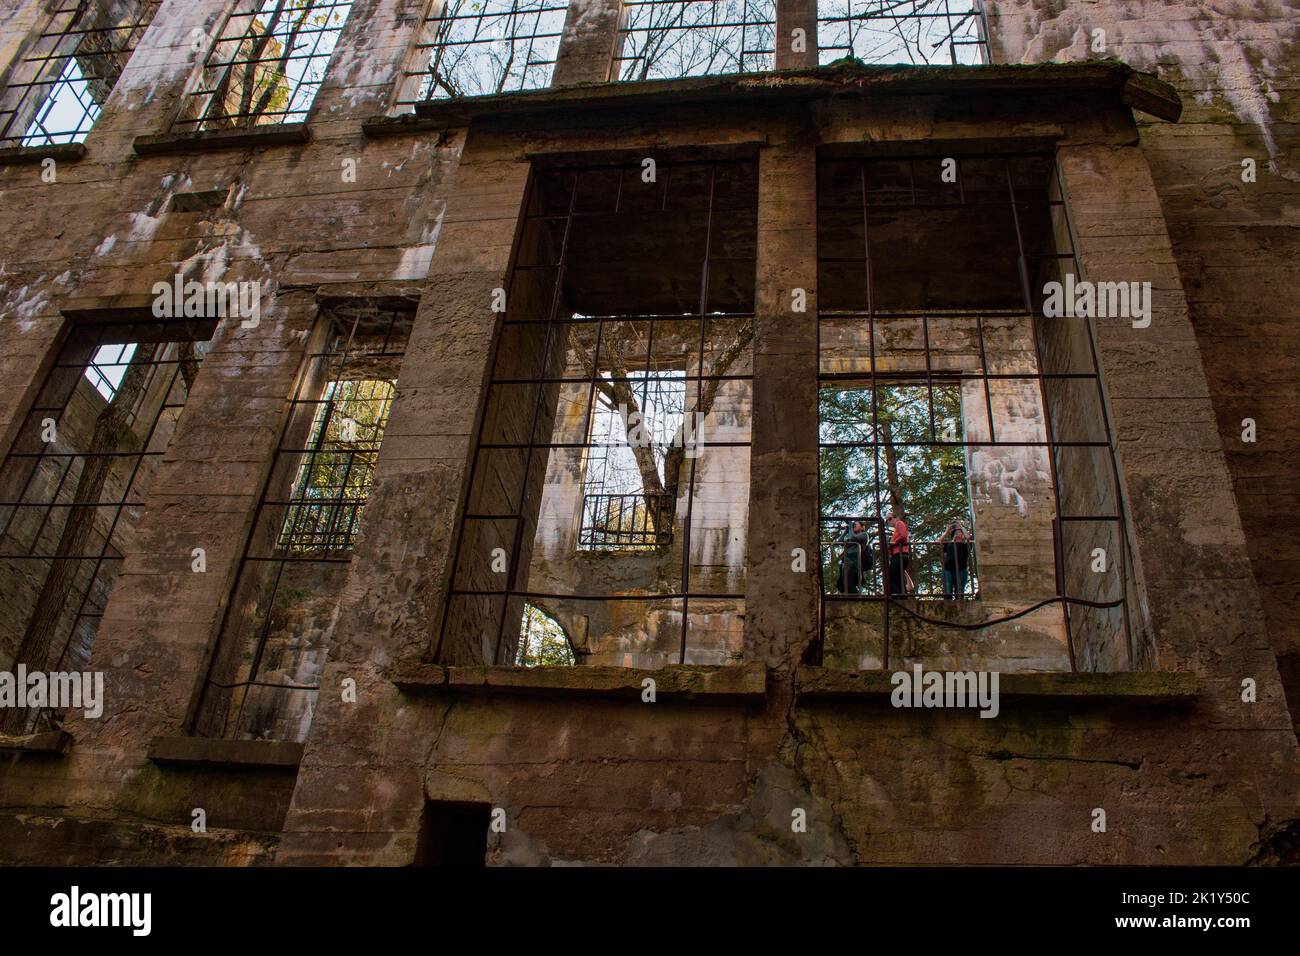 Ein Blick durch die Ruinen einer alten Mühle, Fenster zur Natur und zu Touristen; durch das schauende Glas. Stockfoto